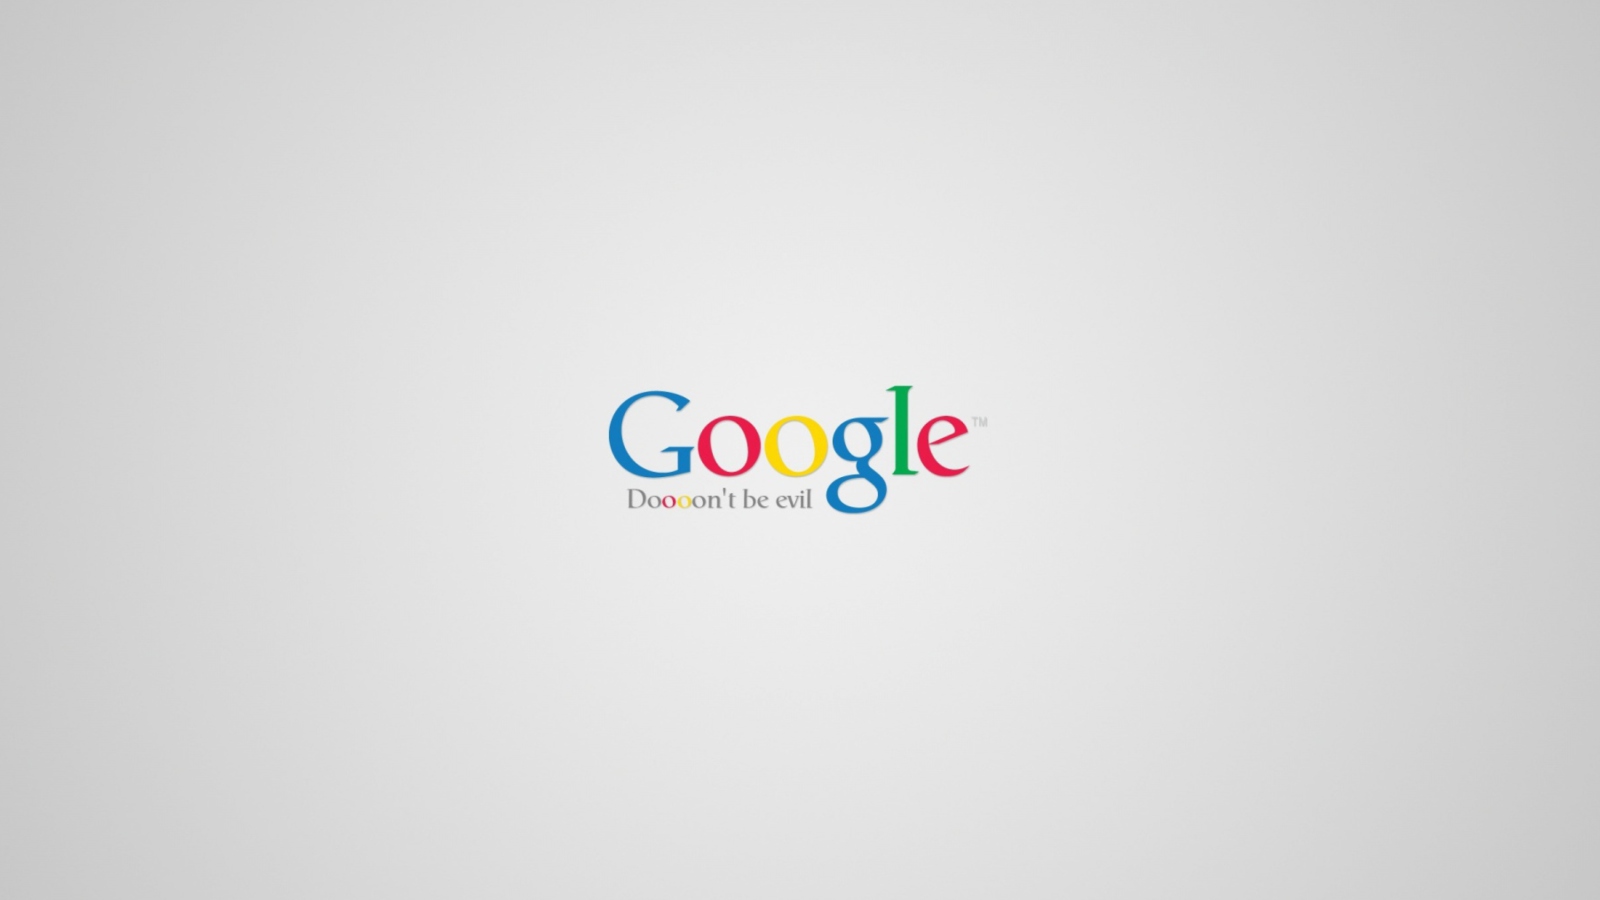 Sfondi Google - Don't be evil 1600x900